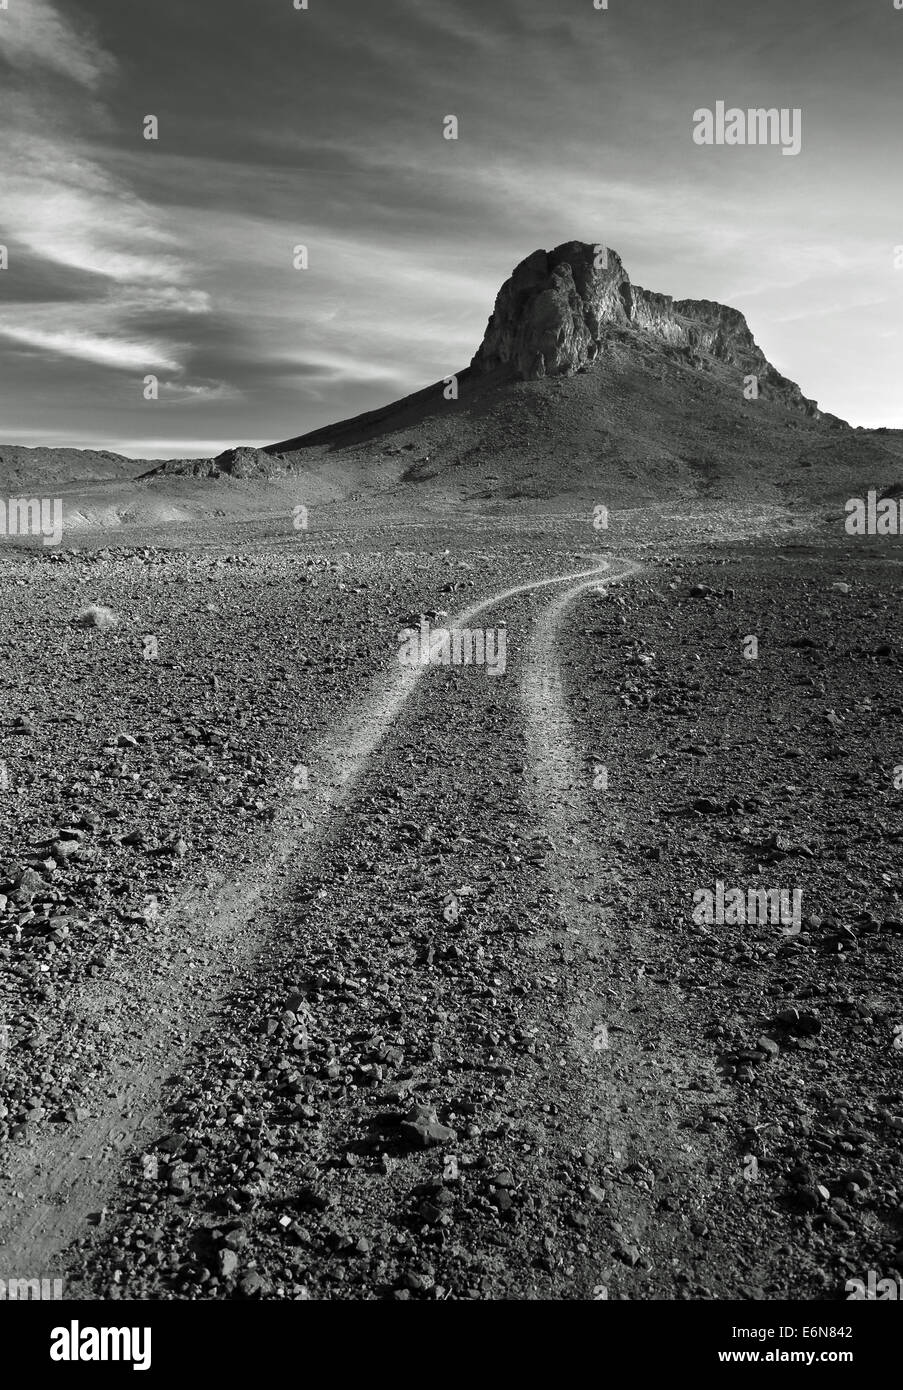 Immagine in bianco e nero di una roccia isolata montagna nel sole caldo deserto pietroso in Marocco, Africa del Nord Foto Stock